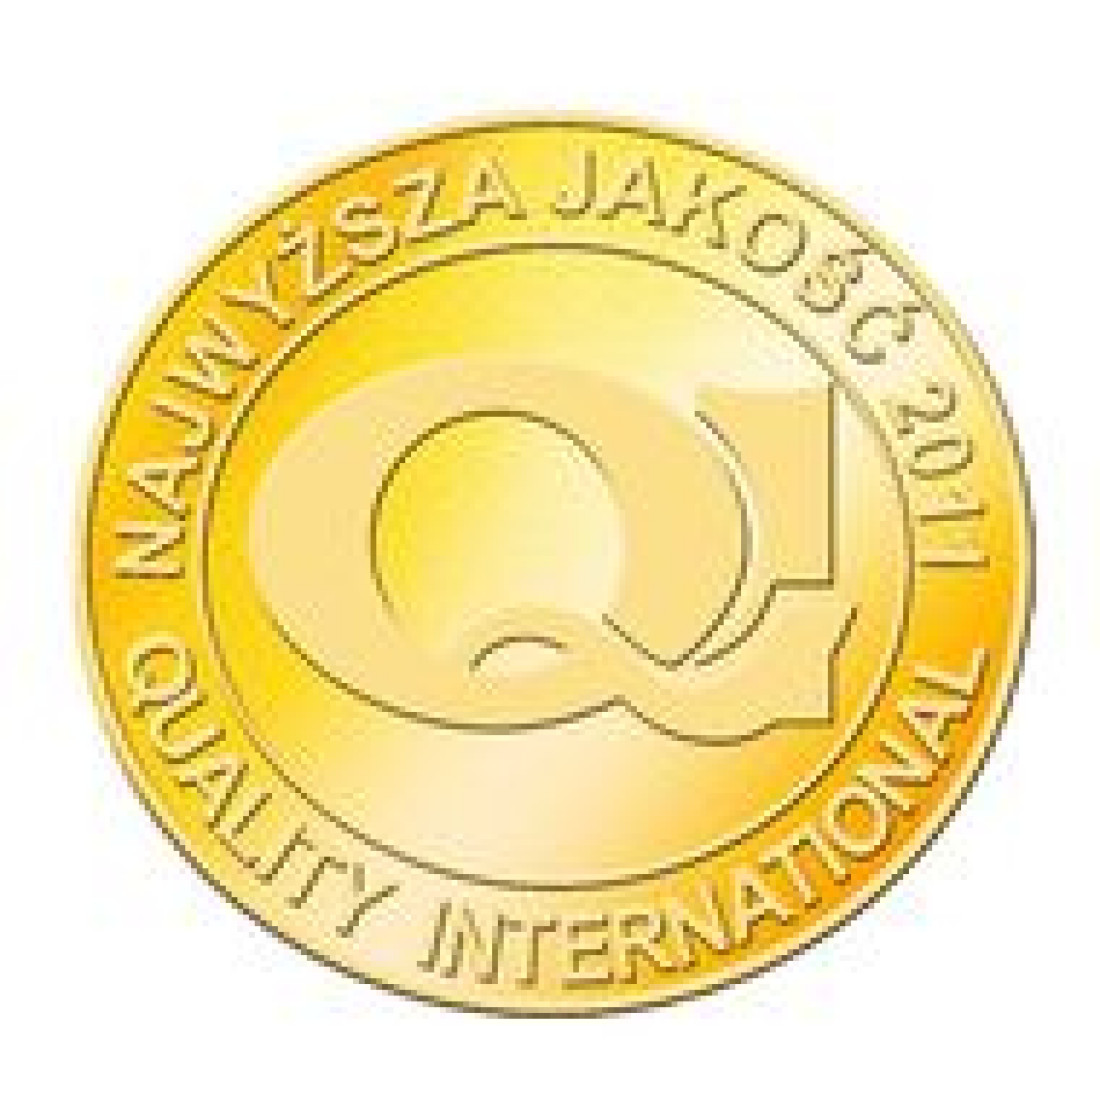 Tytuł i złote godło Najwyższa Jakość Quality International 2011 dla Baltic Wood™!